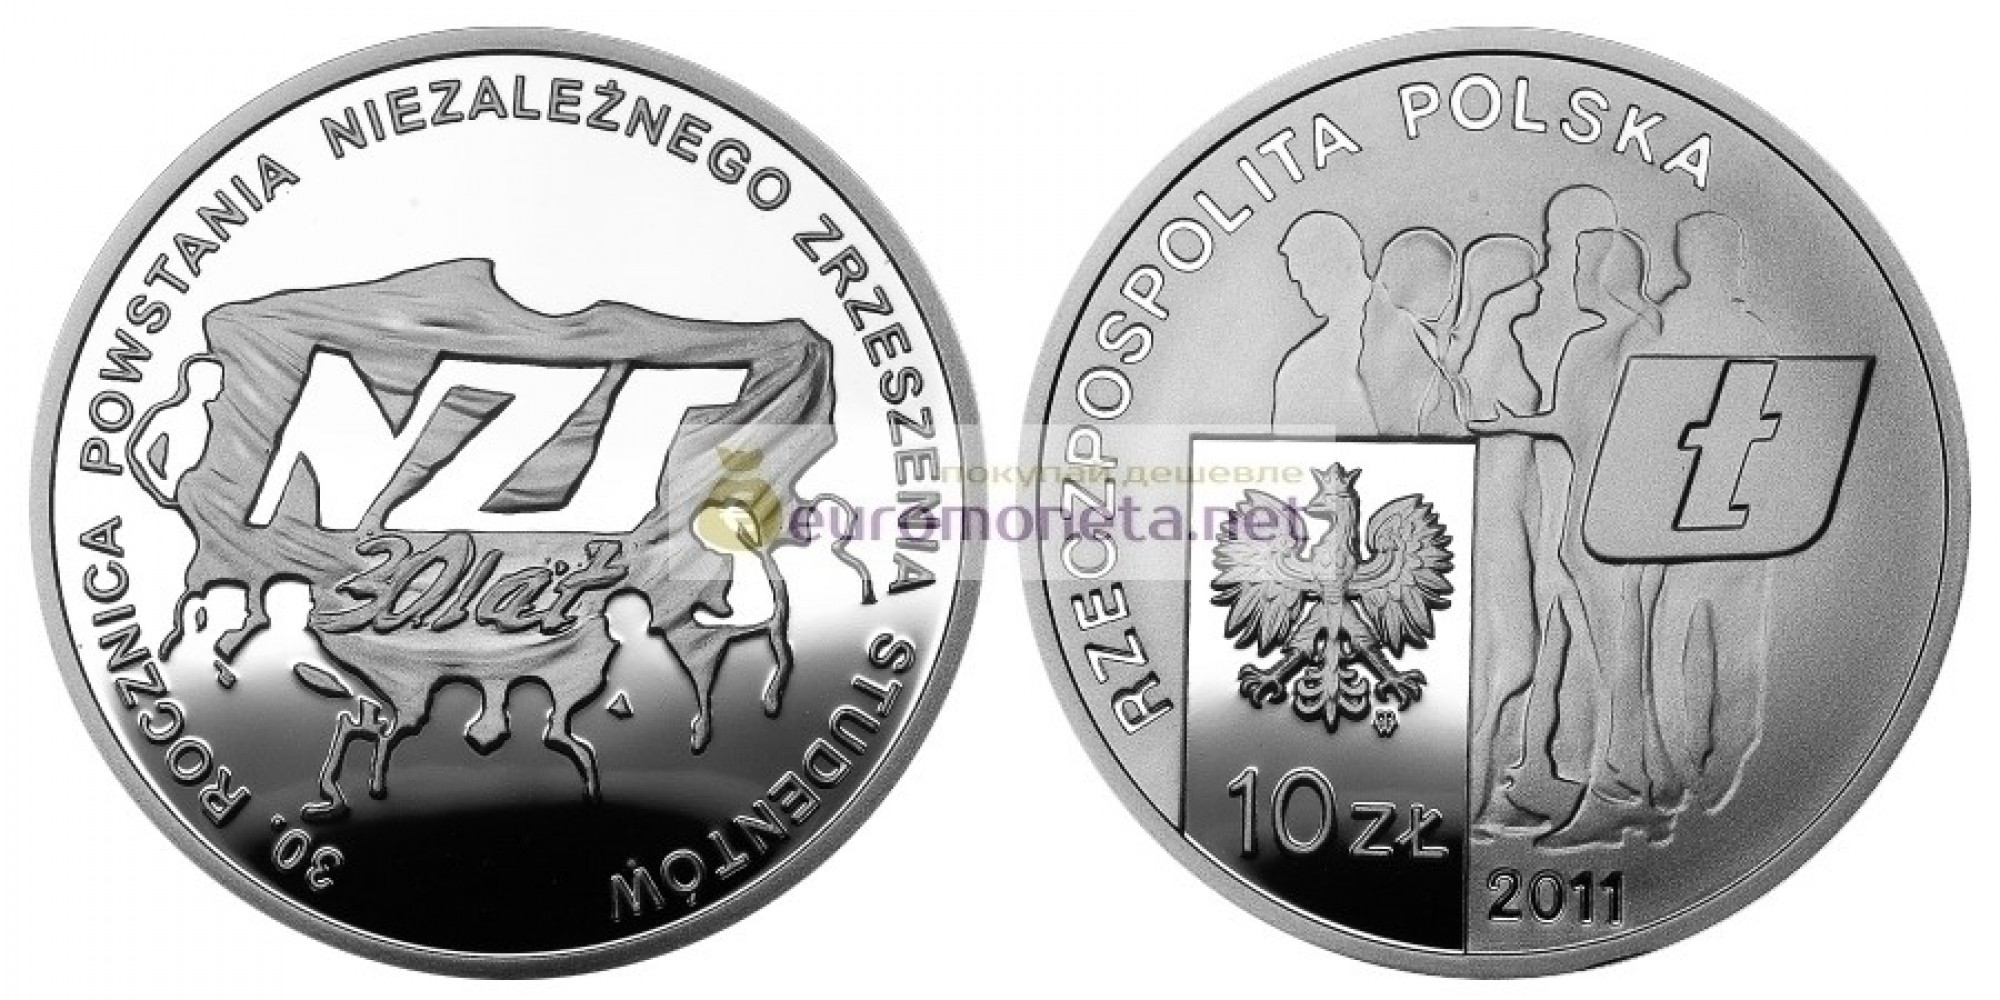 Польша 10 злотых 2011 год 30 лет со дня основания Независимого студенческого Союза серебро